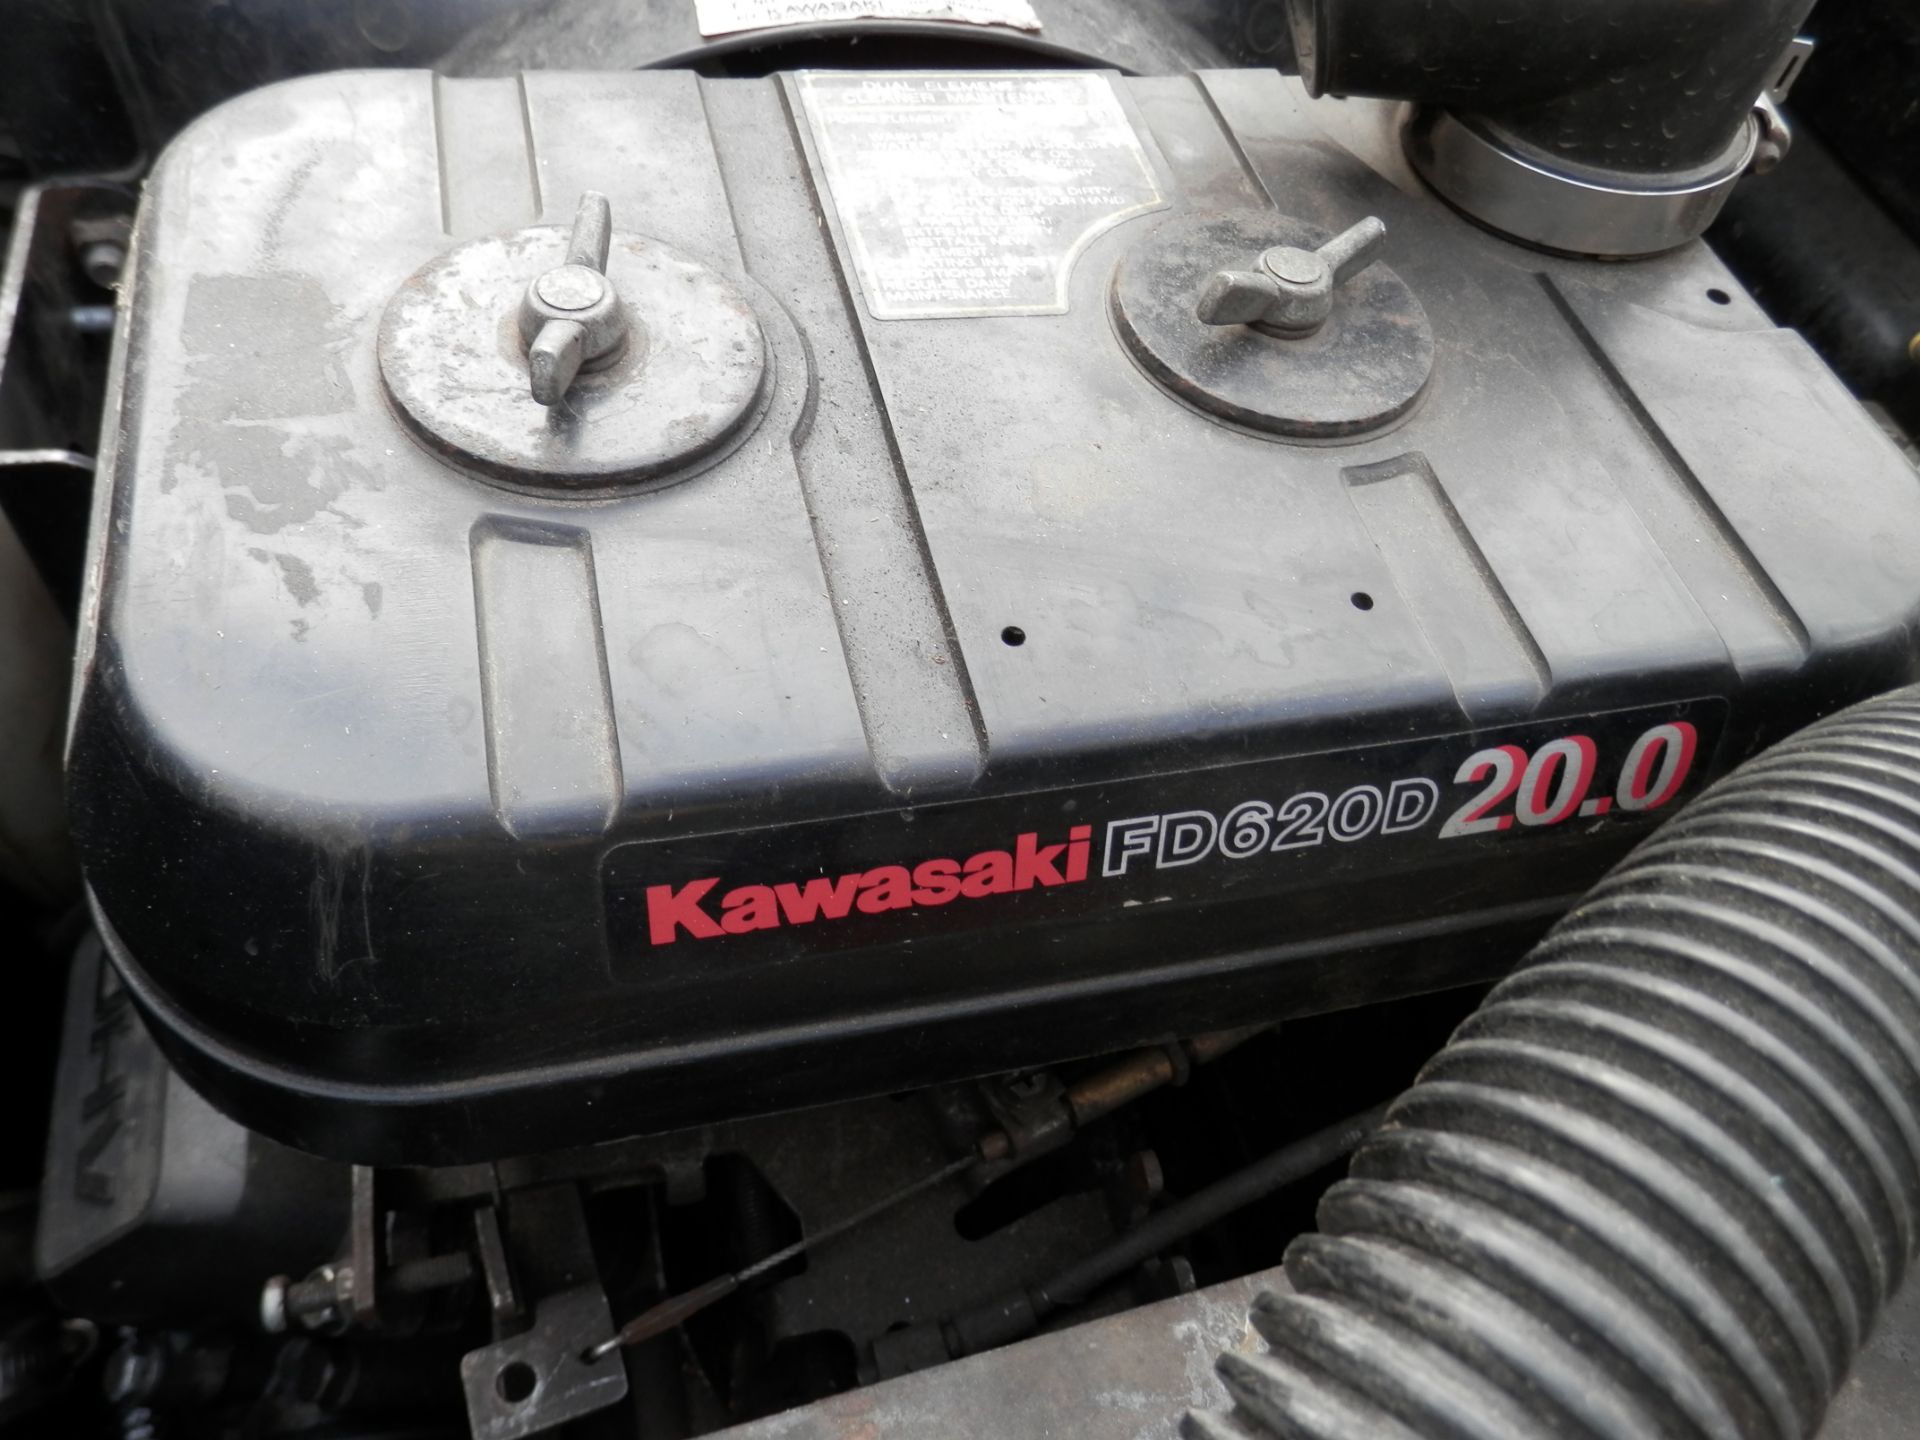 1998 ARGO AQUABUG, 20 BHP KAWASAKI ENGINED V-VTWIN PETROL. LAND OR WATER - Image 11 of 12